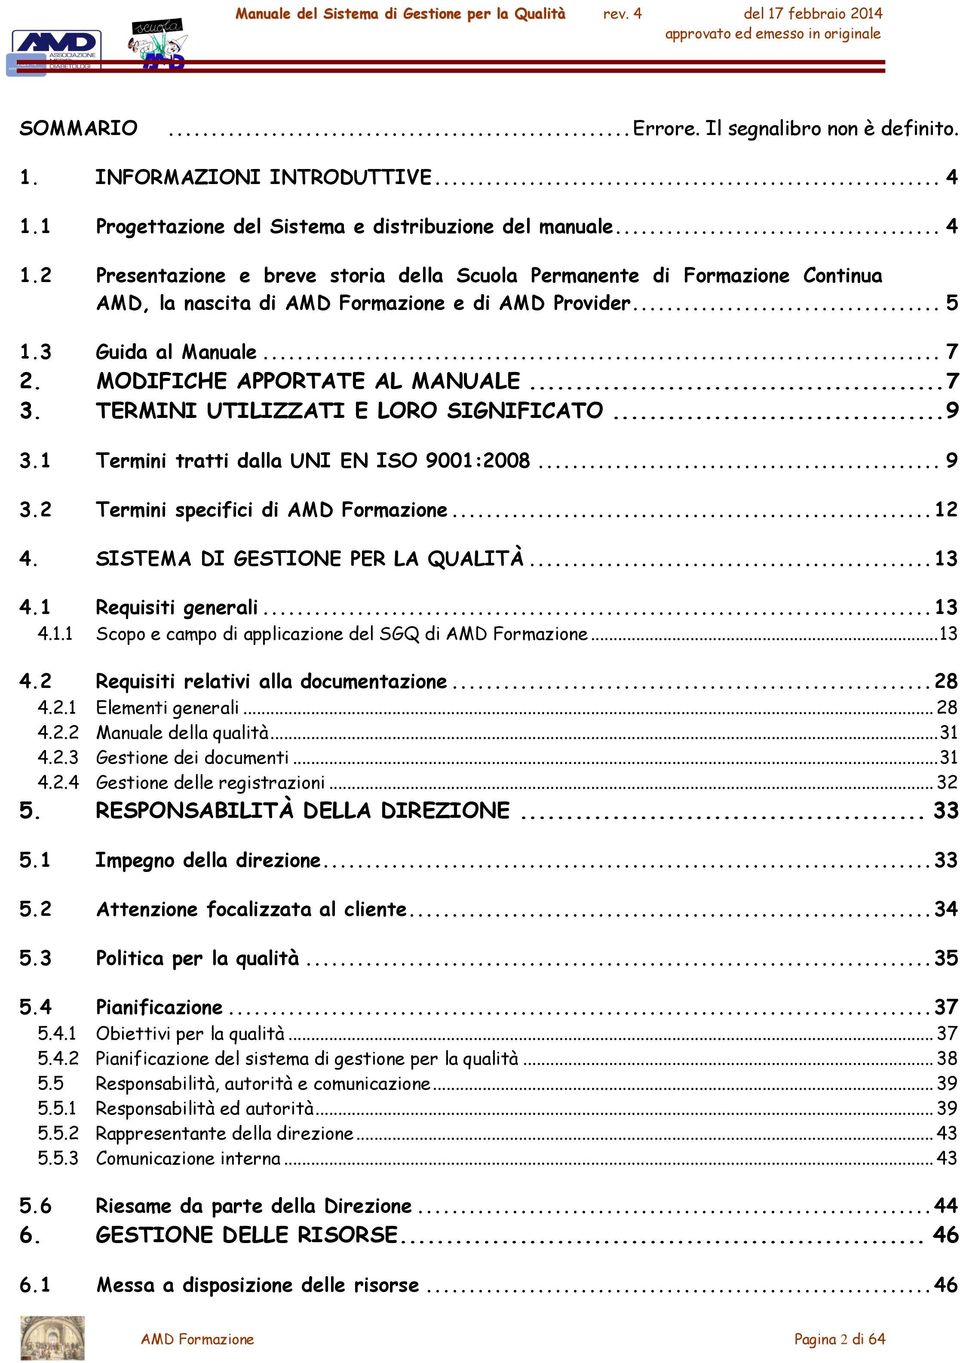 3 Guida al Manuale... 7 2. MODIFICHE APPORTATE AL MANUALE... 7 3. TERMINI UTILIZZATI E LORO SIGNIFICATO... 9 3.1 Termini tratti dalla UNI EN ISO 9001:2008... 9 3.2 Termini specifici di AMD Formazione.